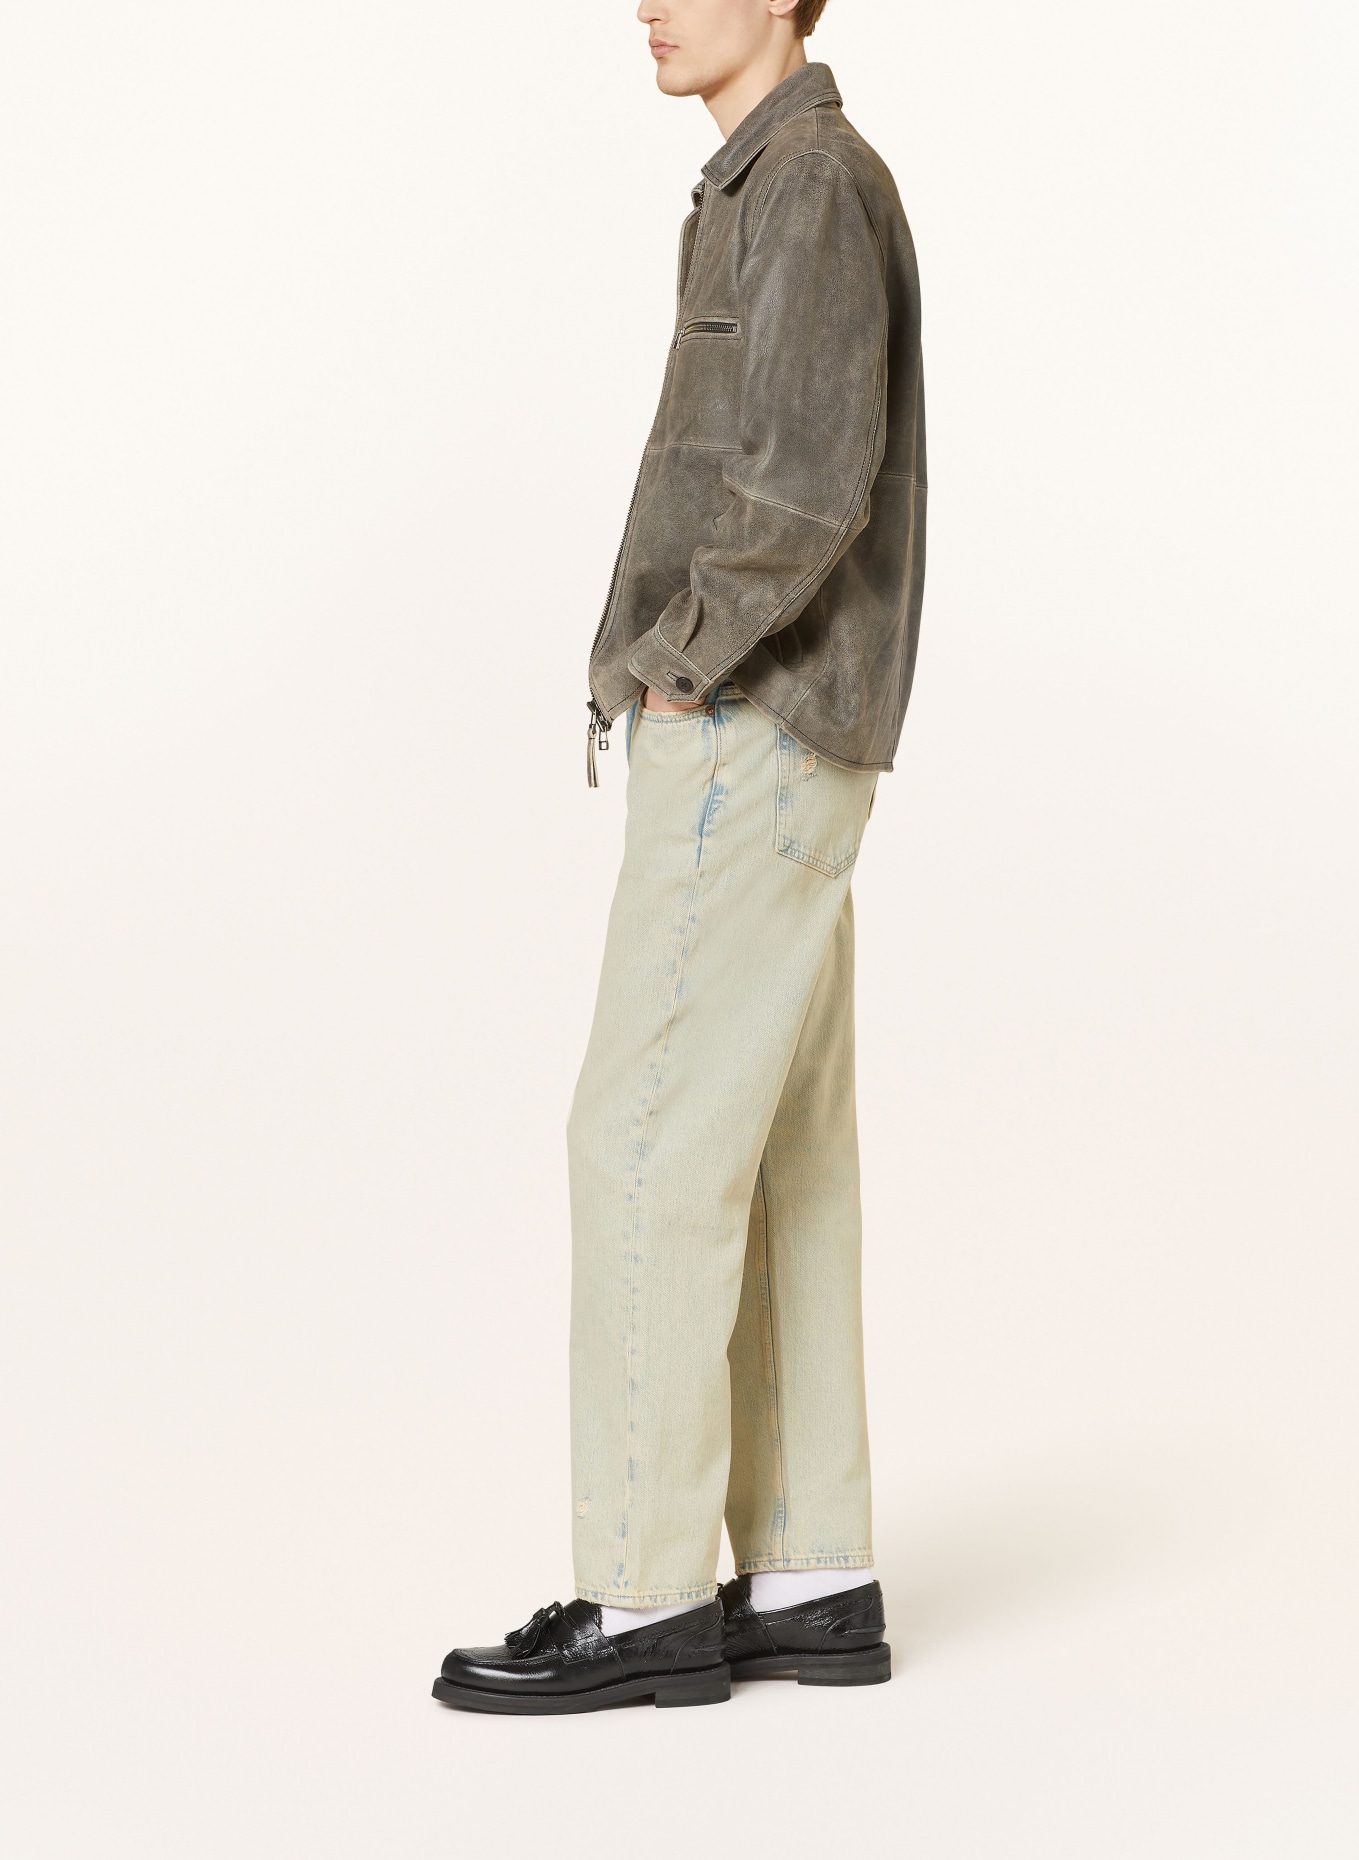 SAMSØE  SAMSØE Jeans EDDIE regular fit, Color: CLR001370 Khaki dust (Image 4)